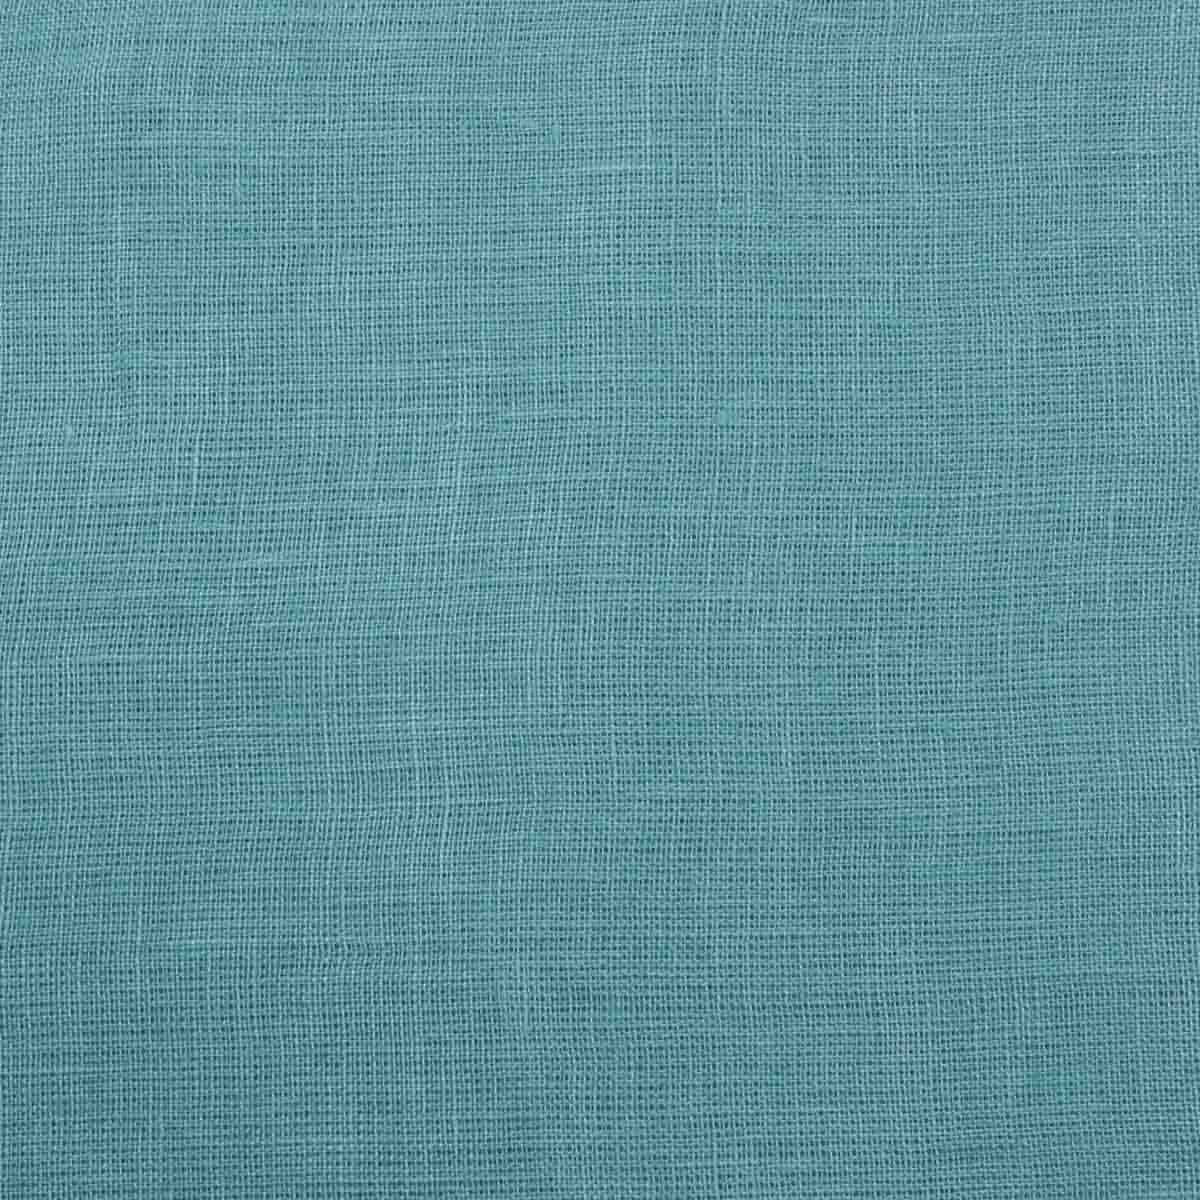 Pure Linen Cotton Teal Blue (2)